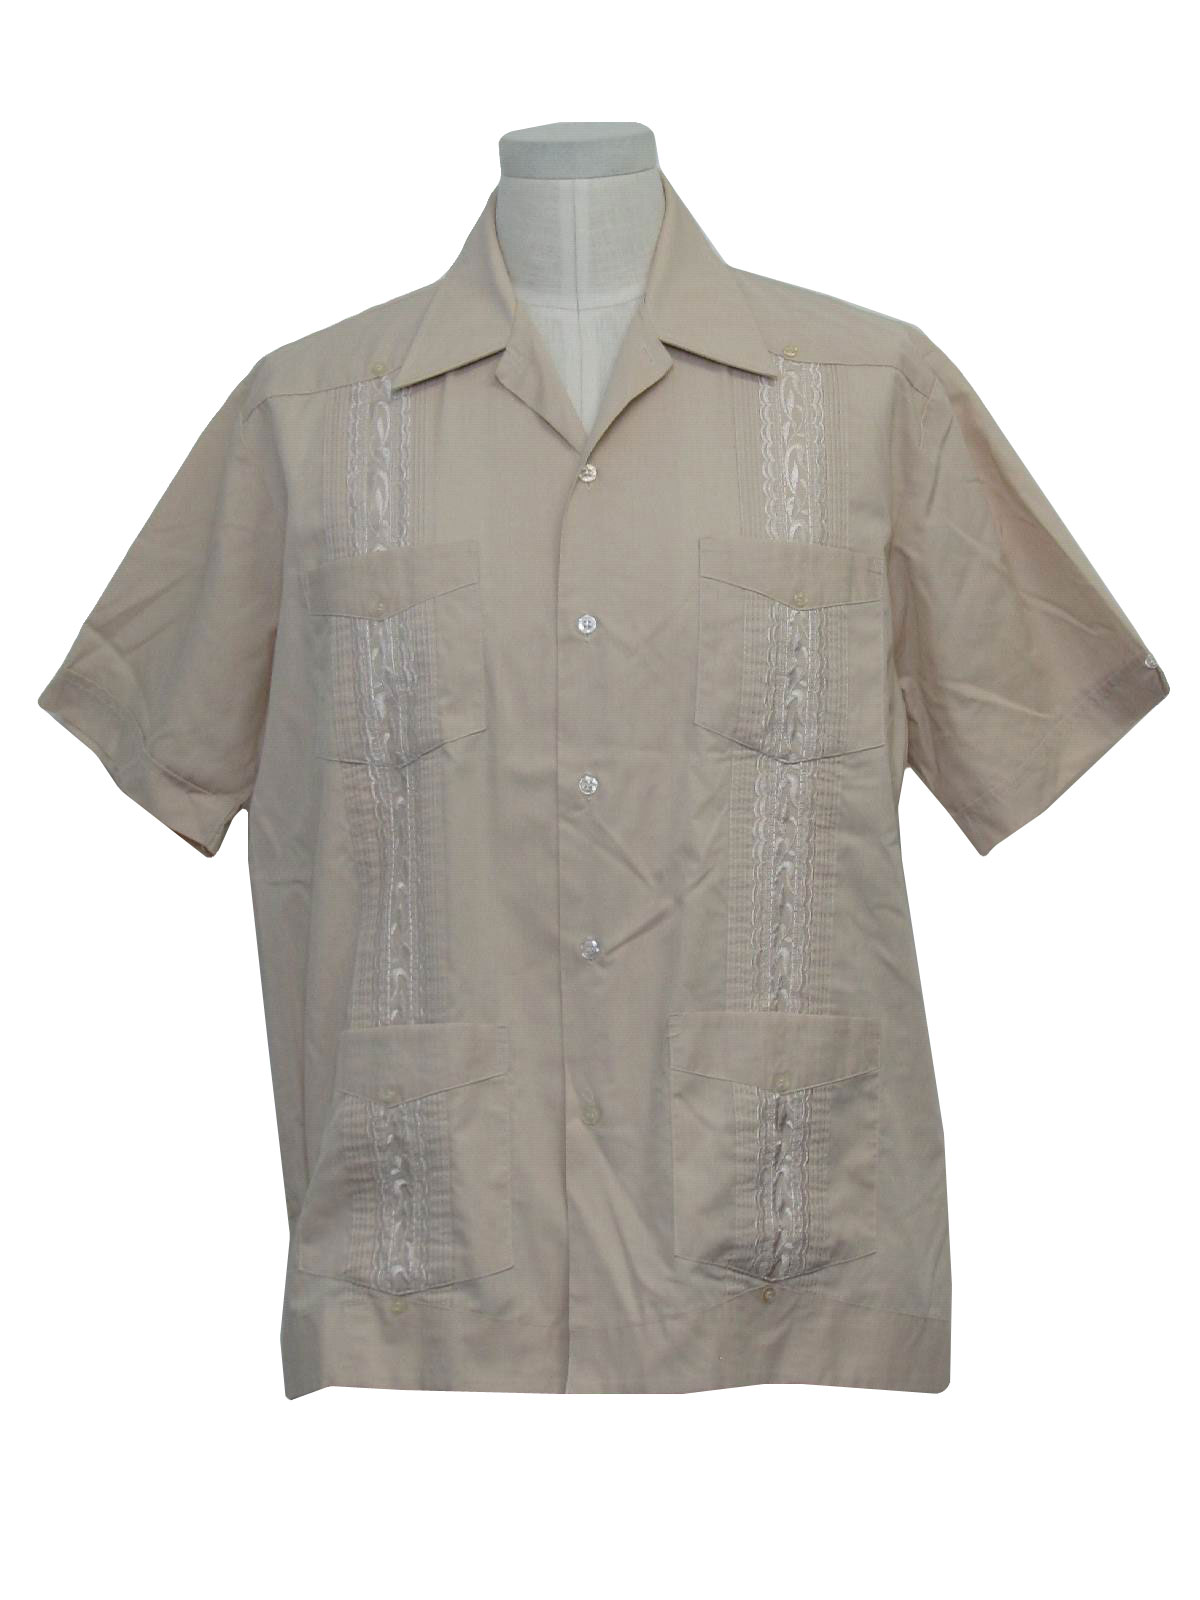 Retro 80s Guayabera Shirt (Haband) : 80s -Haband- Mens cream on cream ...